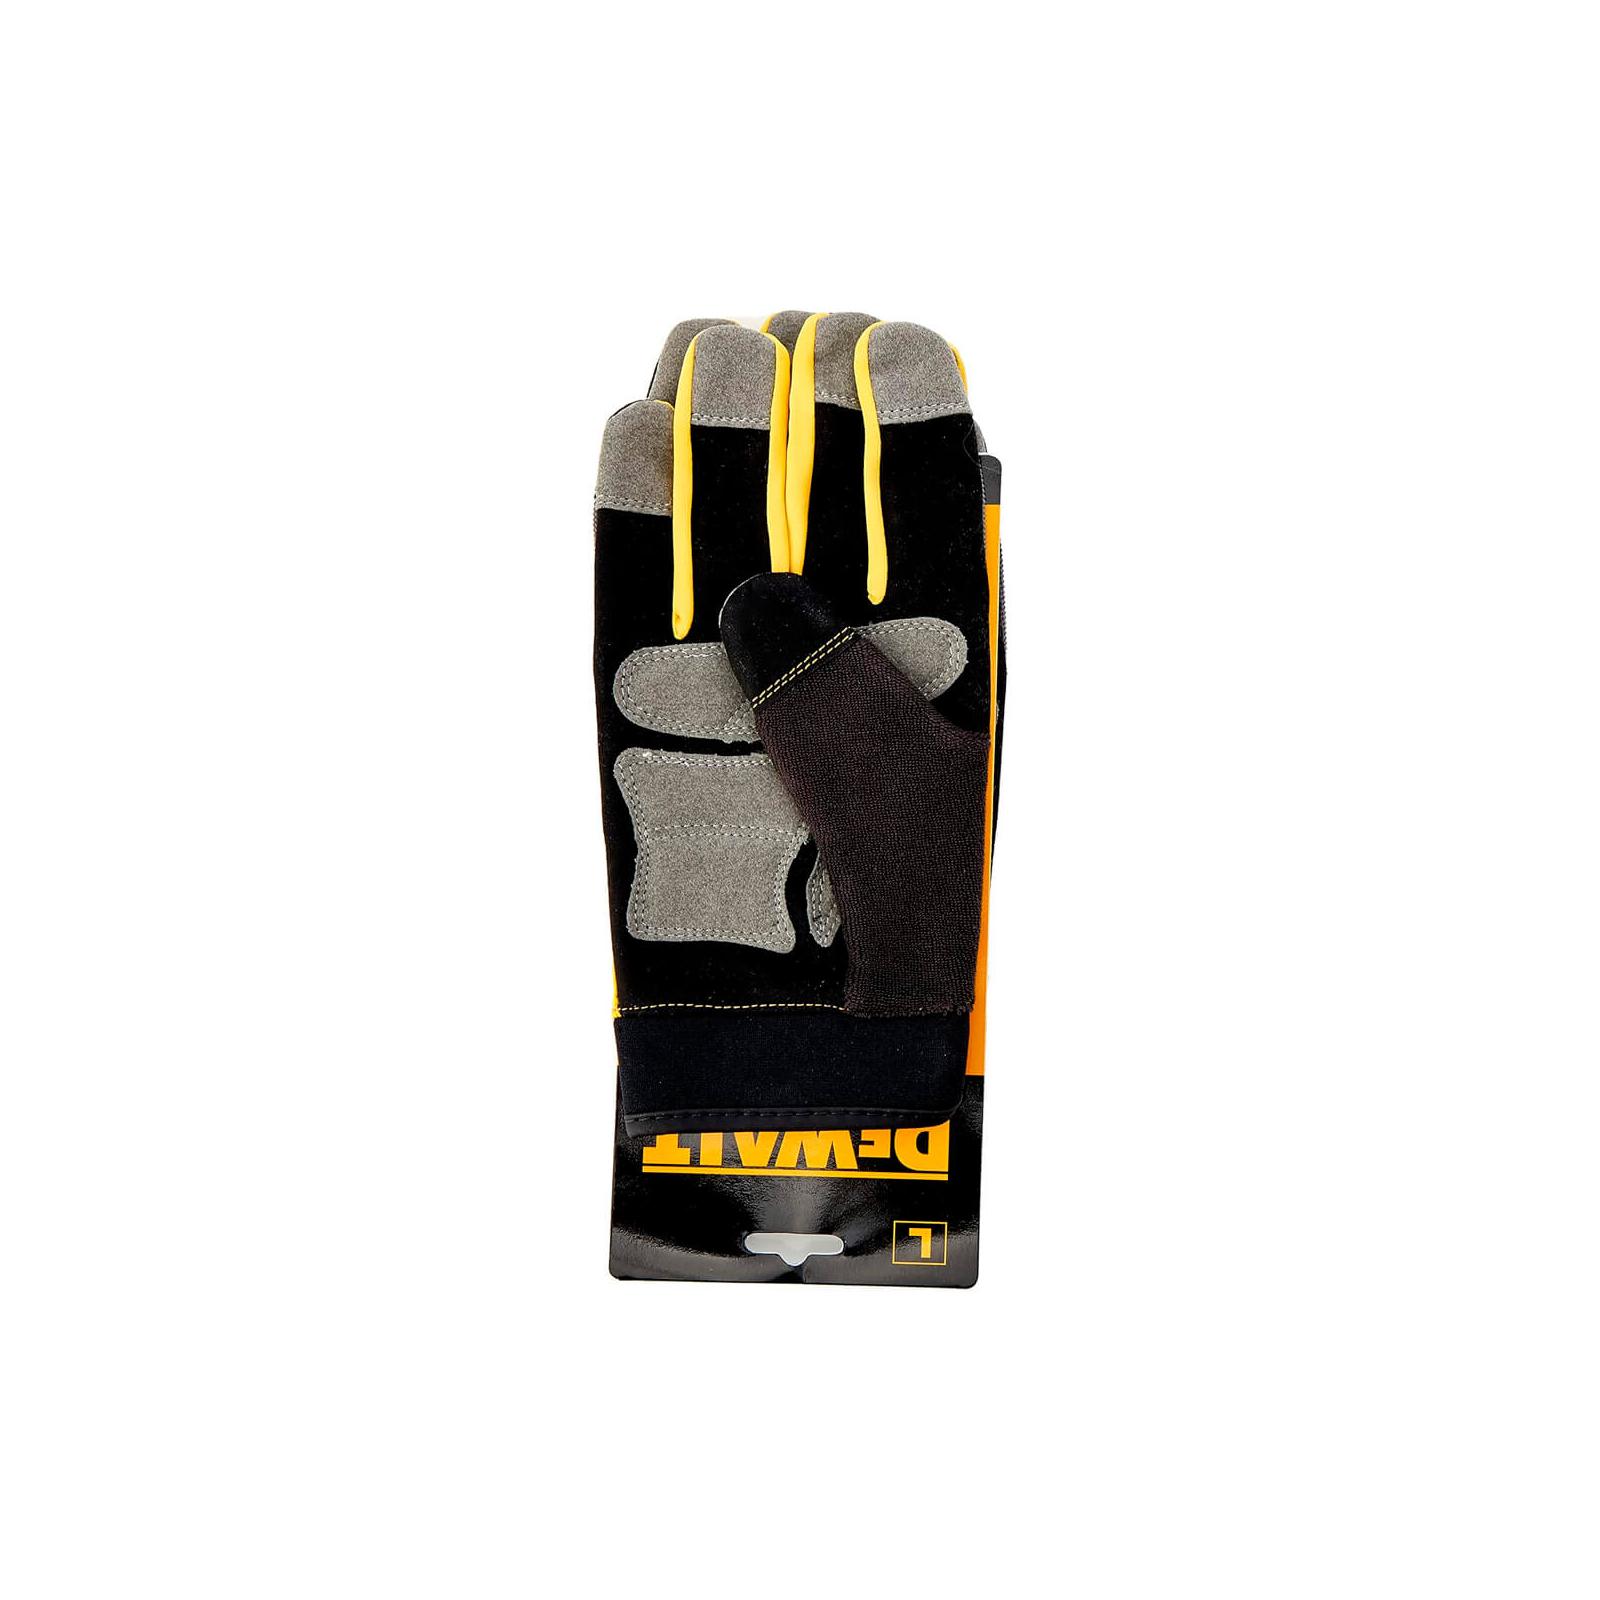 Защитные перчатки DeWALT разм. L/9, с накладками на ладони и пальцах (DPG215L) изображение 3